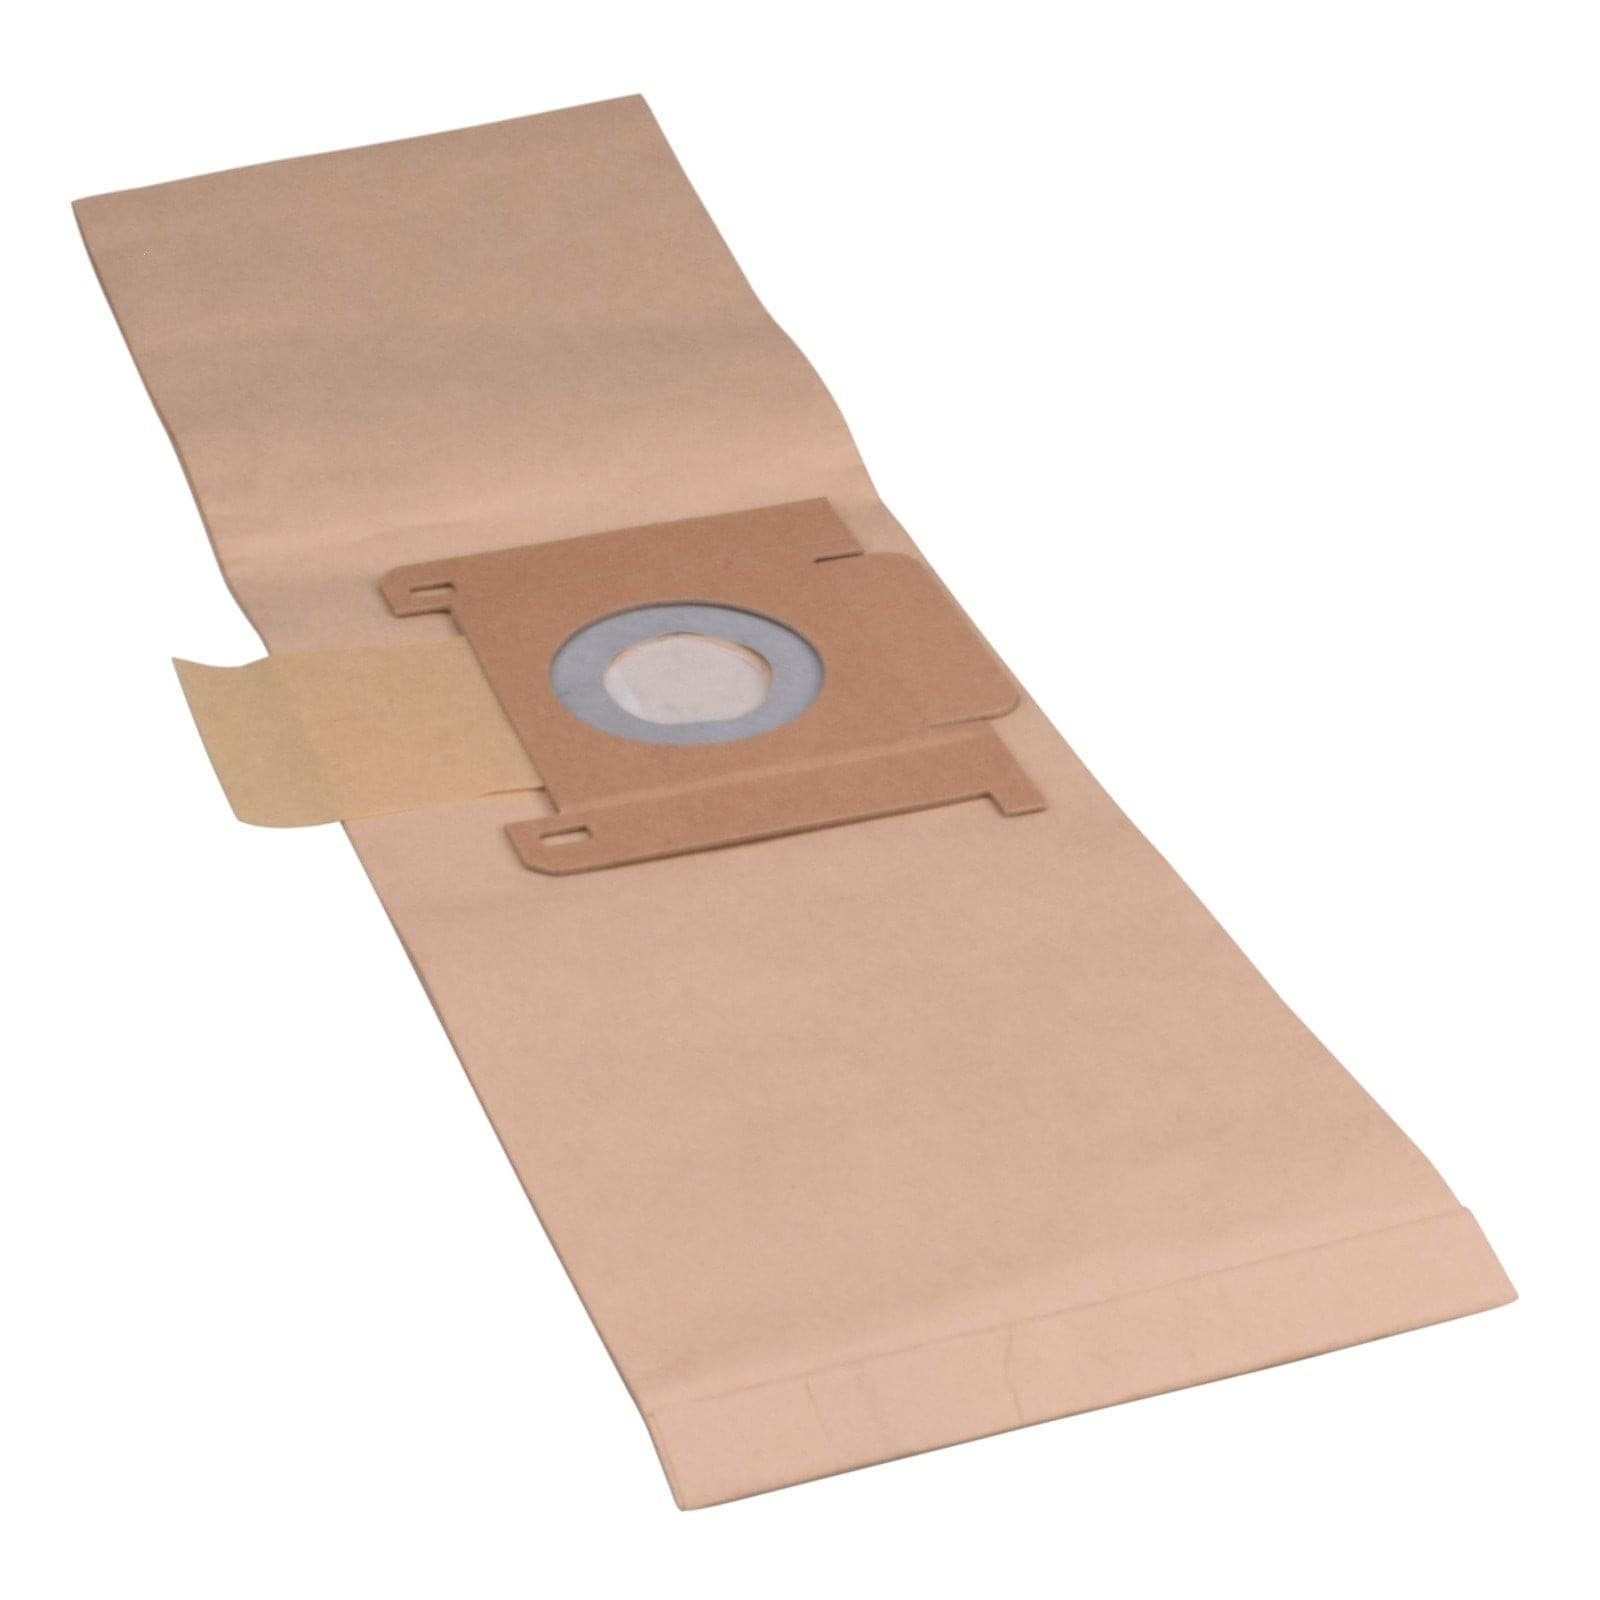 Reinica Staubsaugerbeutel passend für Clean a la Card K100220094830, 10er-Pack Staubbeutel Saugerbeutel Beutel Filtertüten